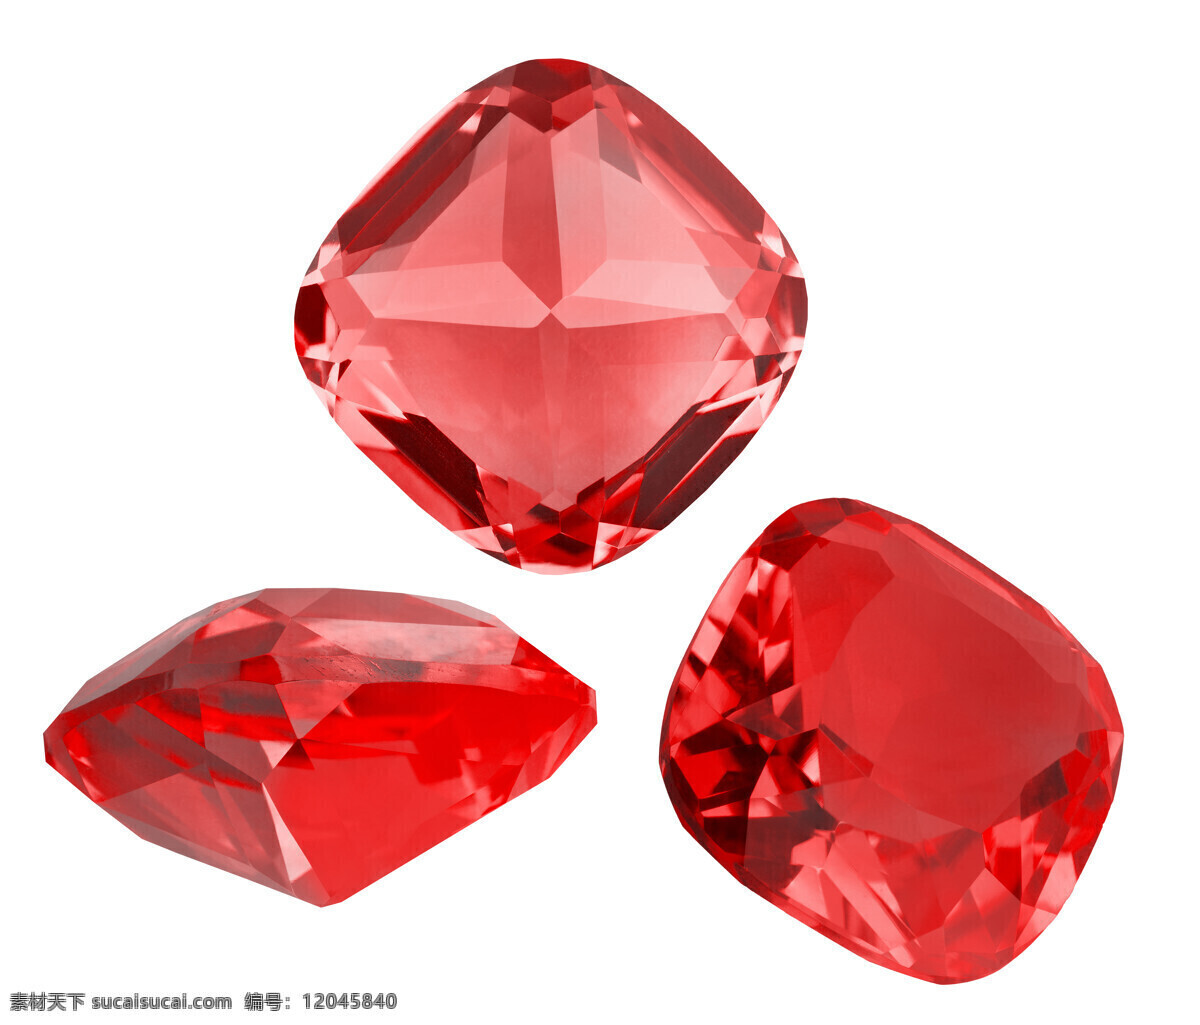 红宝石 宝石 水晶 雕刻 戒指 项链 钻石 珠宝 贵重 尊贵 红钻石 游戏素材 生活交通 生活百科 生活素材